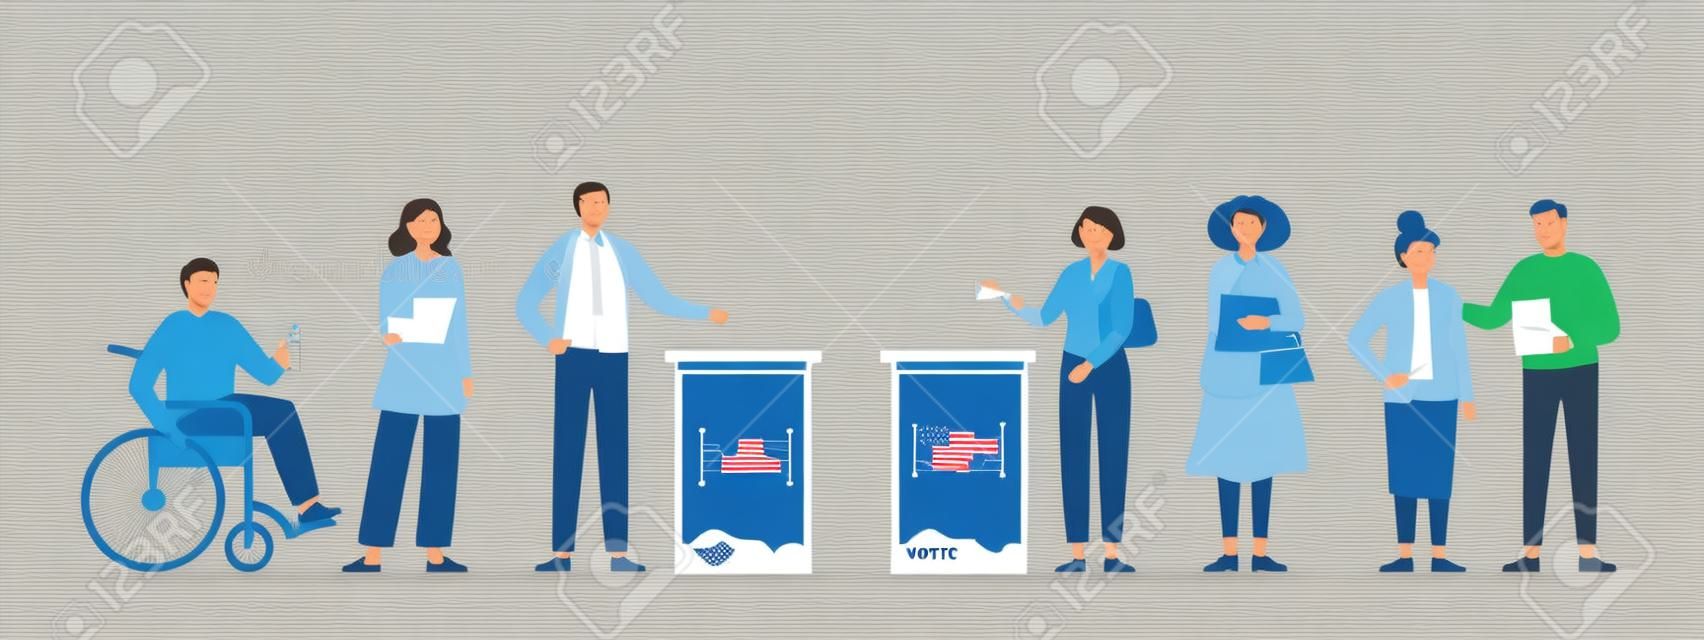 Koncepcja dnia wyborów. różni wyborcy oddający głosy w lokalu wyborczym. mężczyźni i kobiety wkładają papierowe karty do głosowania do urny wyborczej. demokratyczne wybory. płaska ilustracja wektorowa.